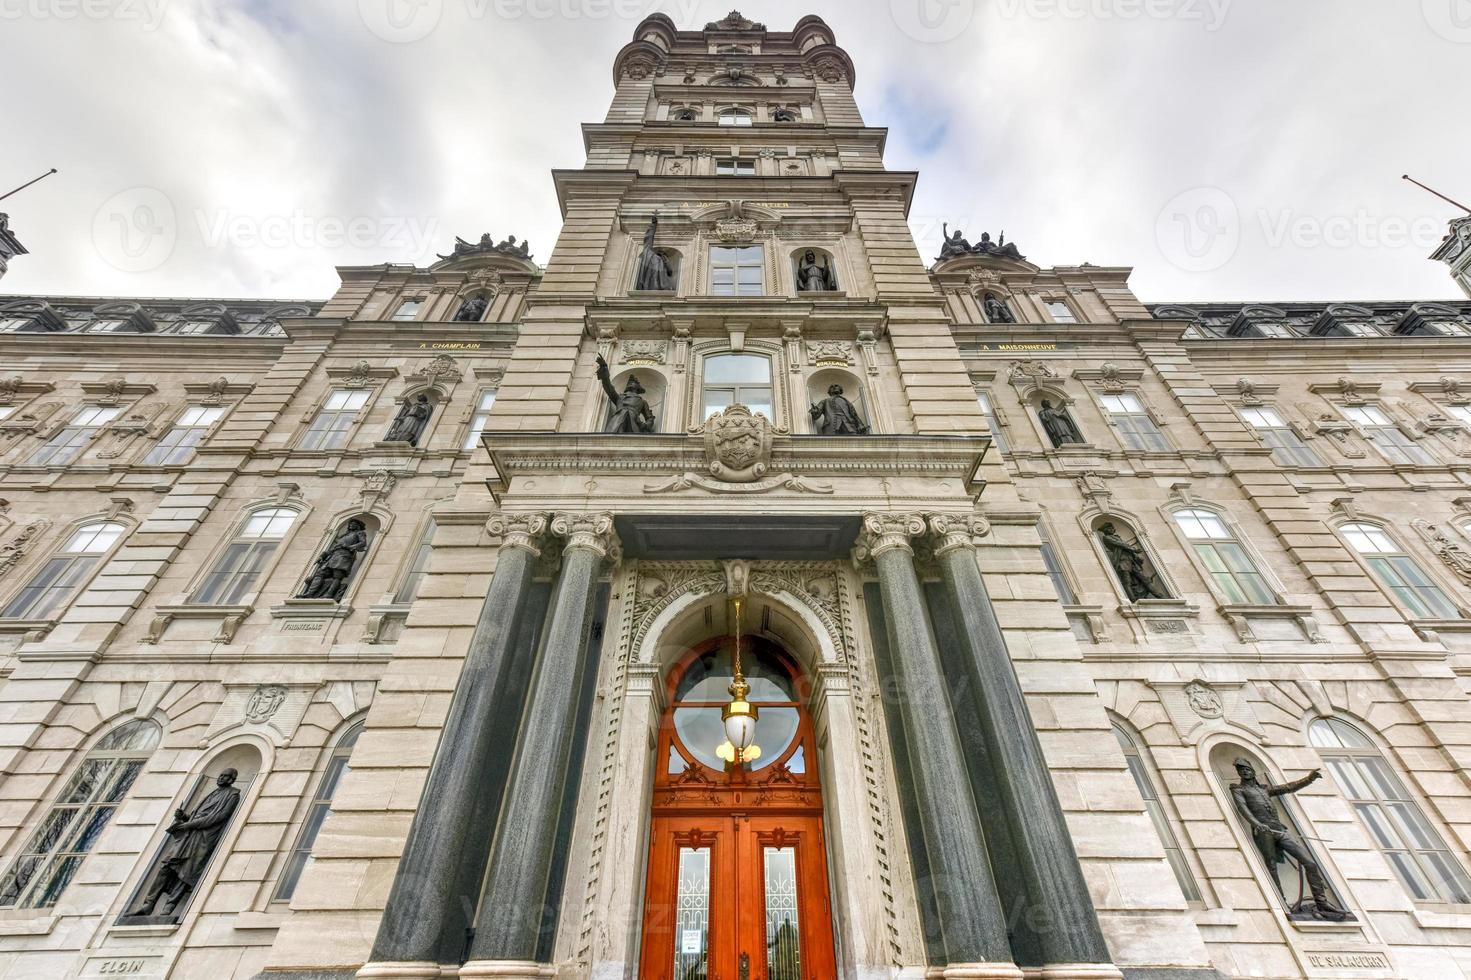 parlament byggnad - Quebec stad foto